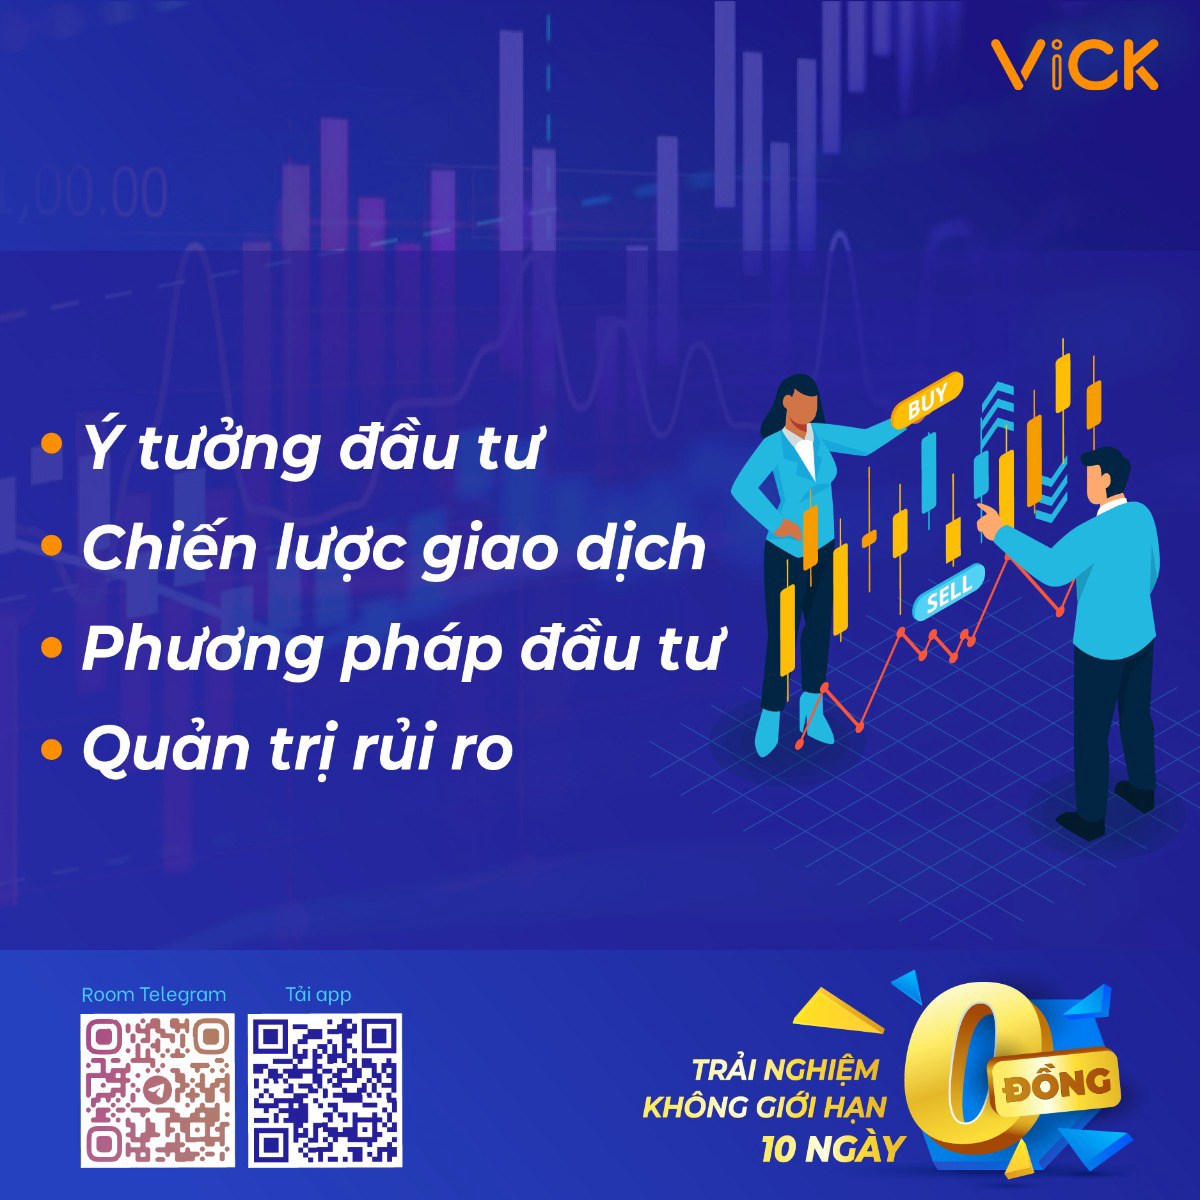 ViCK là công ty cung cấp dịch vụ tư vấn đầu tư dành cho NĐT cá nhân với các phương pháp đầu tư đa dạng  ...